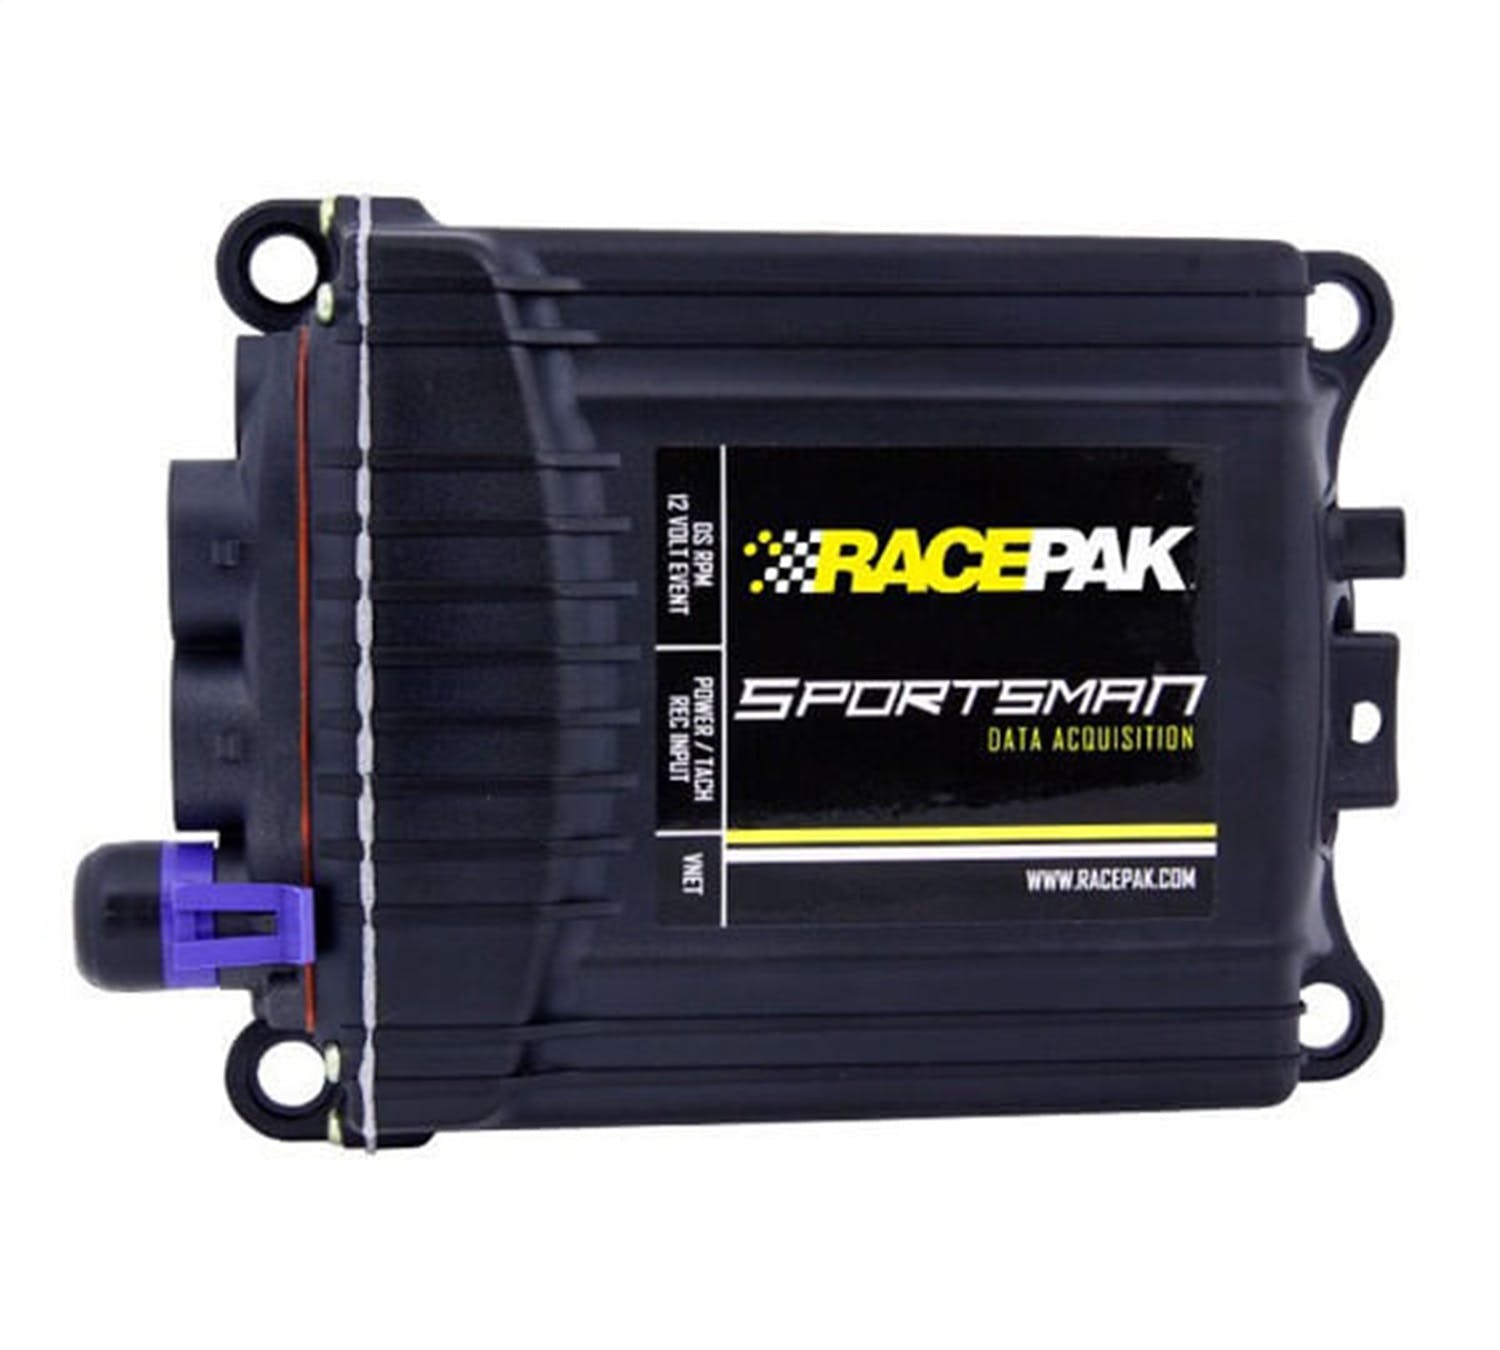 Racepak 610-UG-SPRT4 Sportsman Channel Upgrade